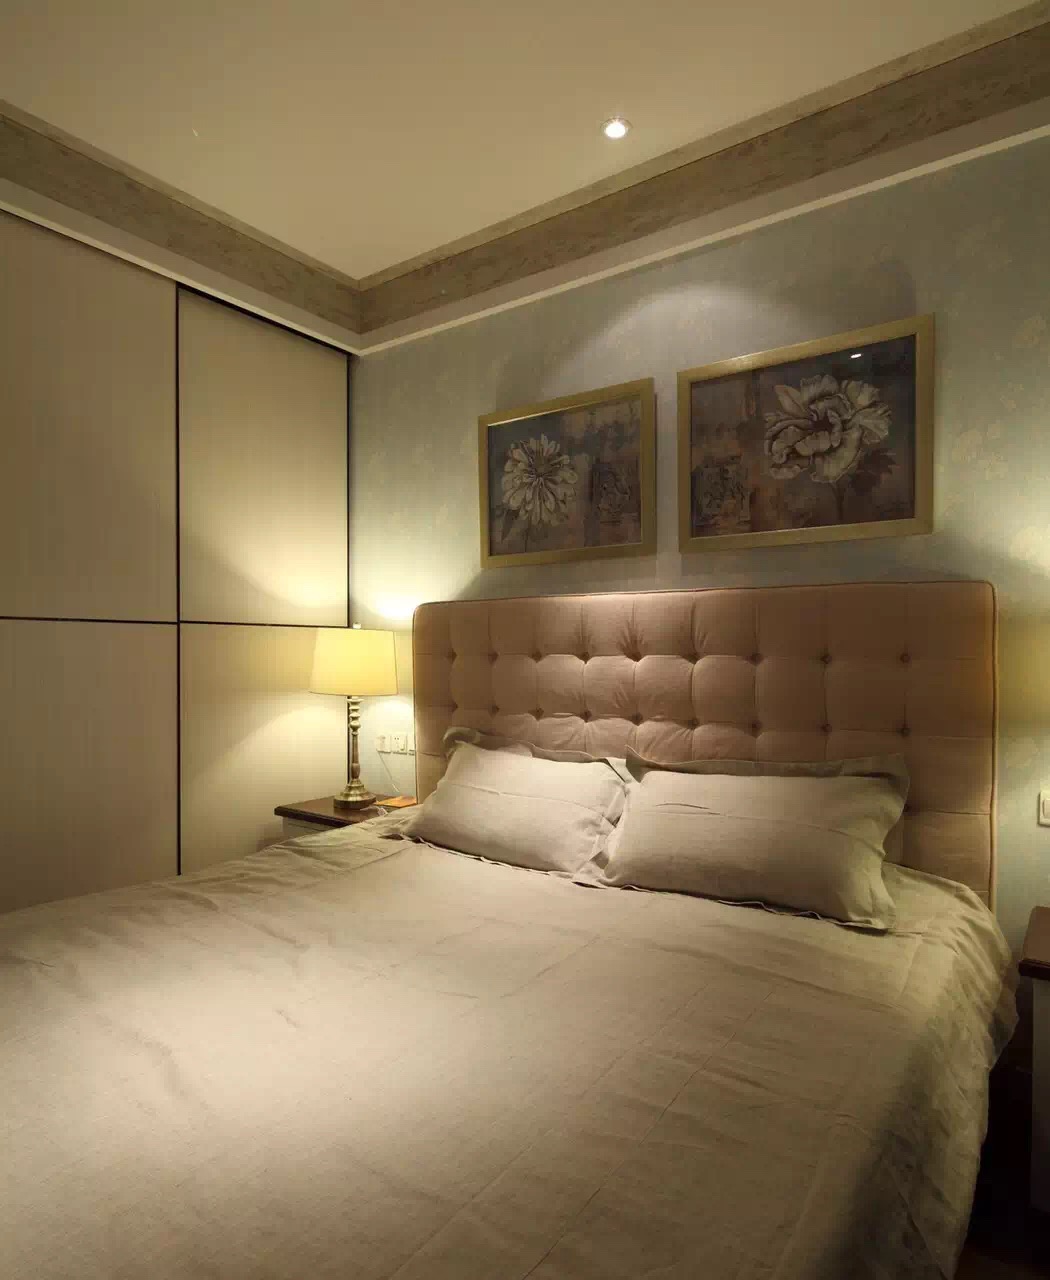 简约美式 三居 装修 样板间 卧室图片来自实创装饰上海公司在简约美式 犹如初见 怦然心动的分享